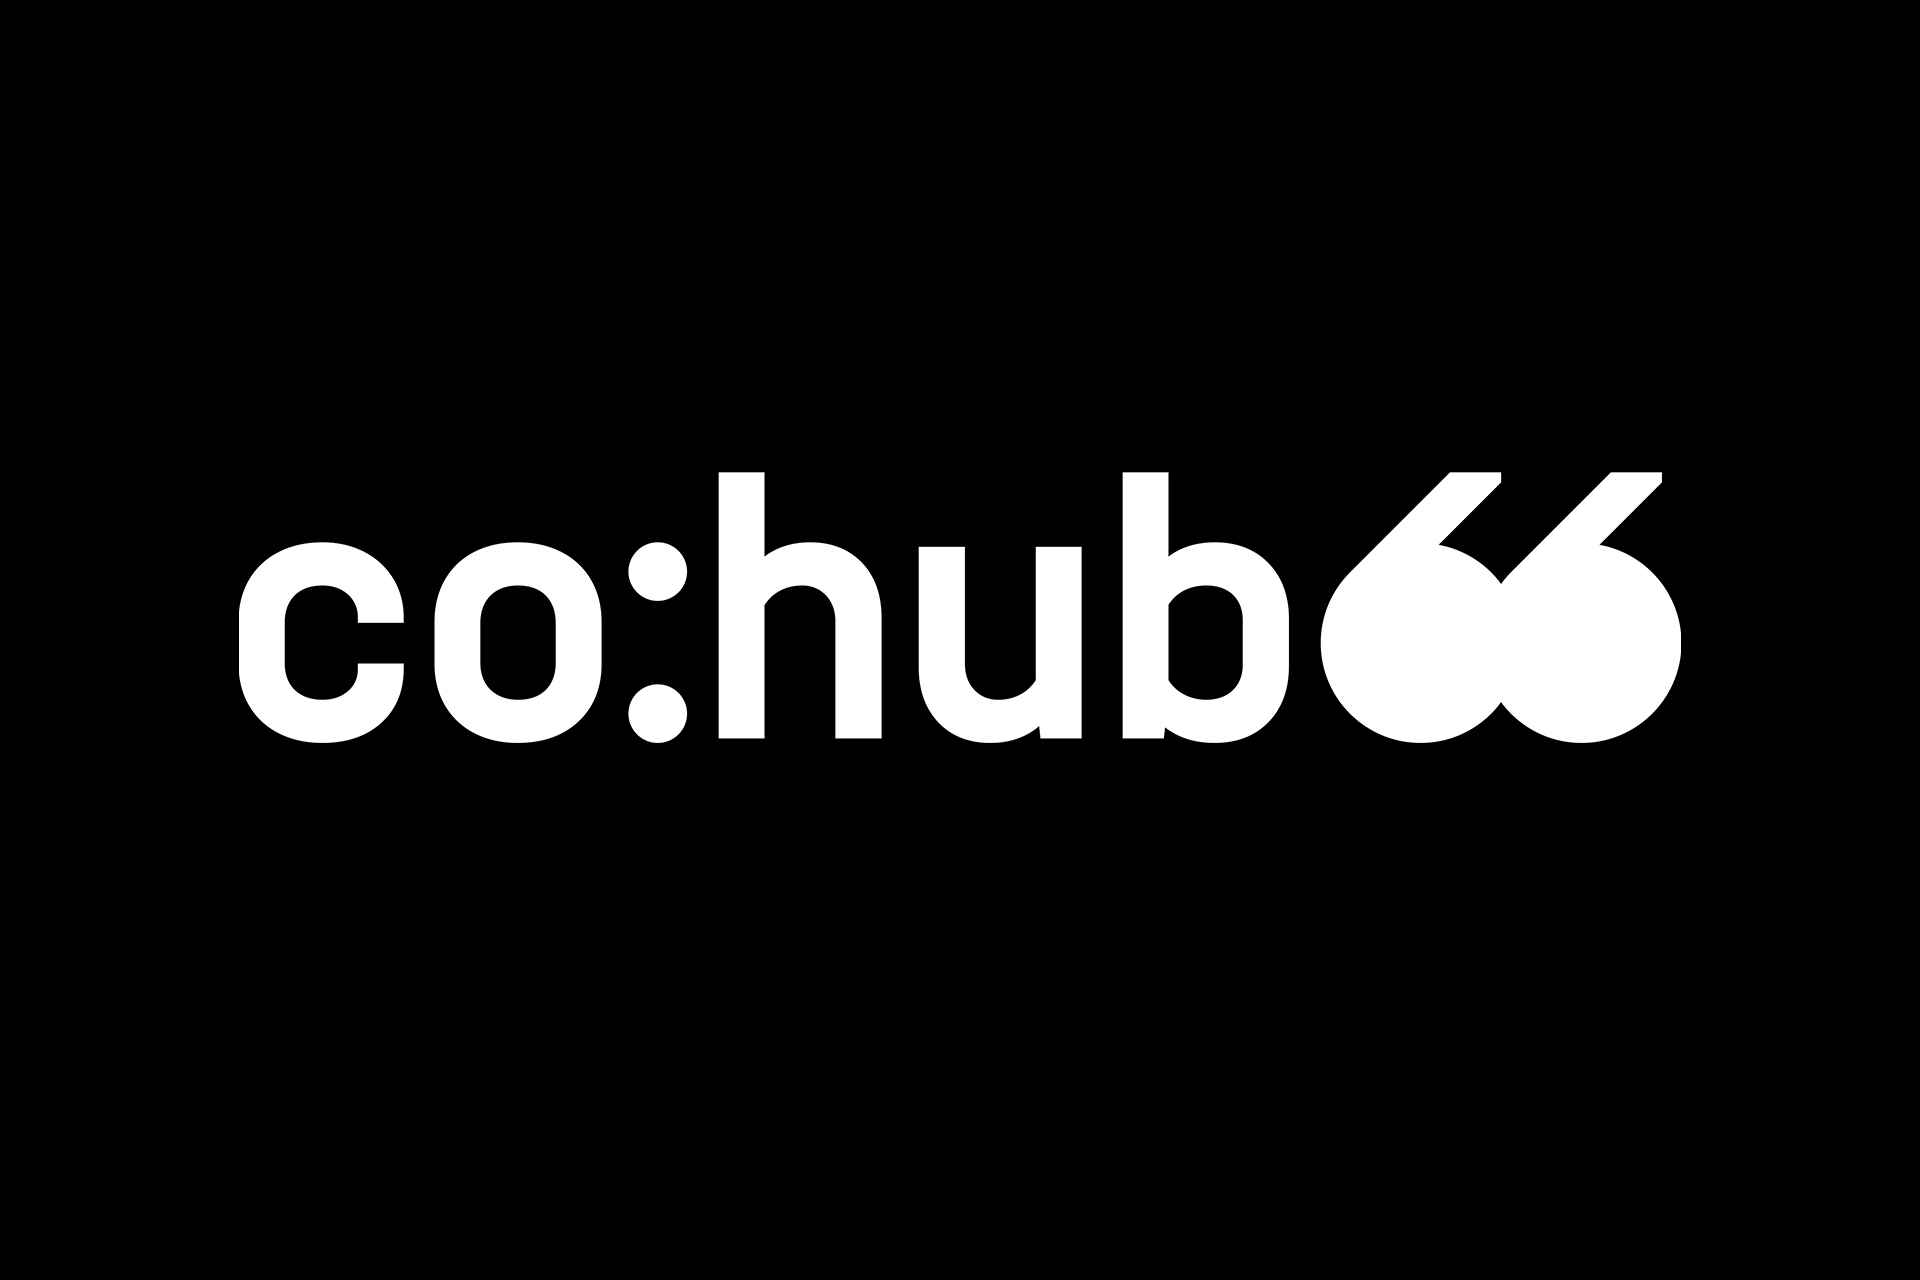 Logo Design für cohub66 © Diemer & Schweig Designstudio